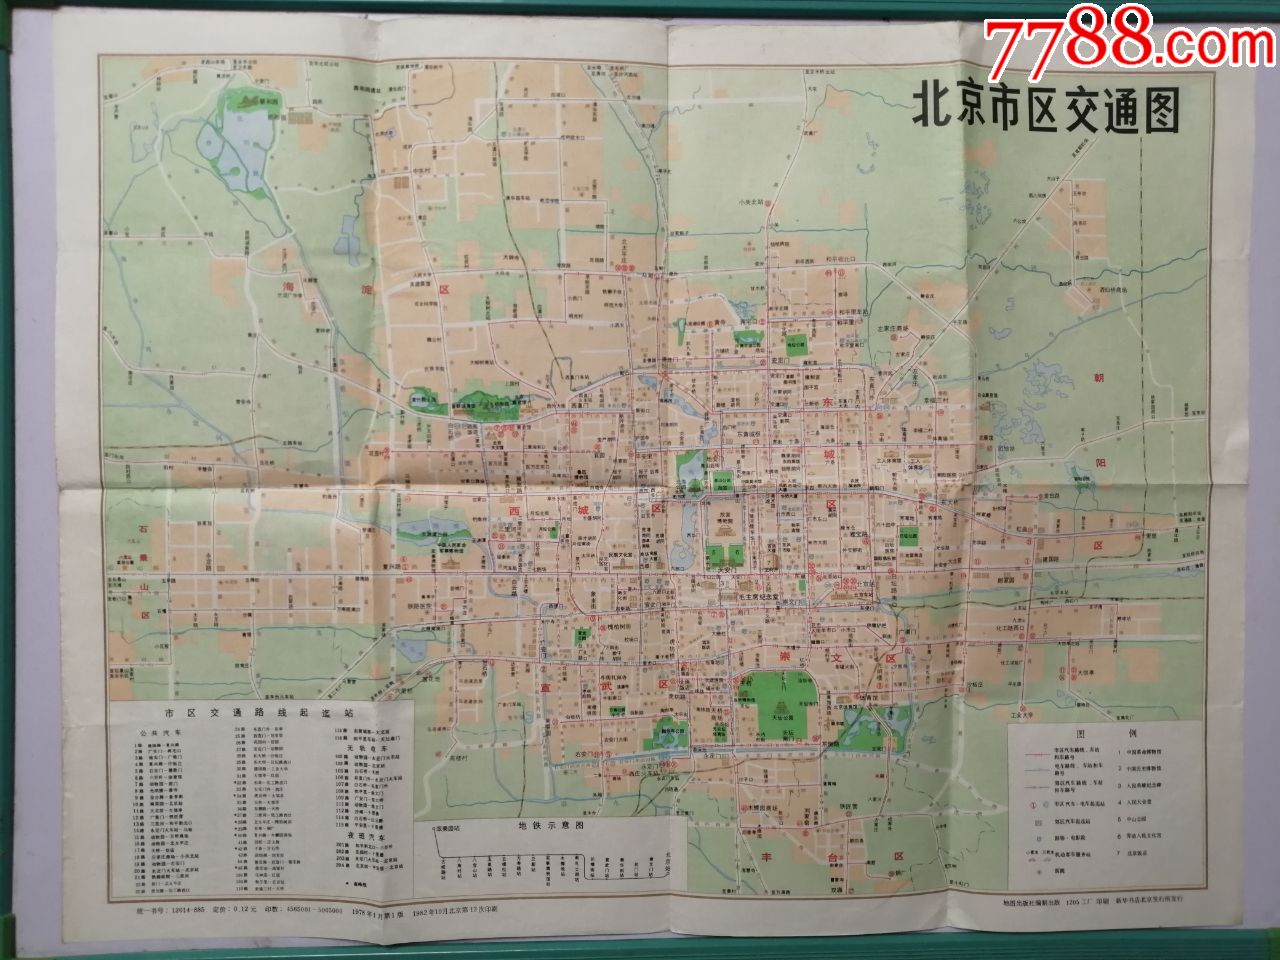 老地图:北京市区交通图--地图出版社1982年一版十三印